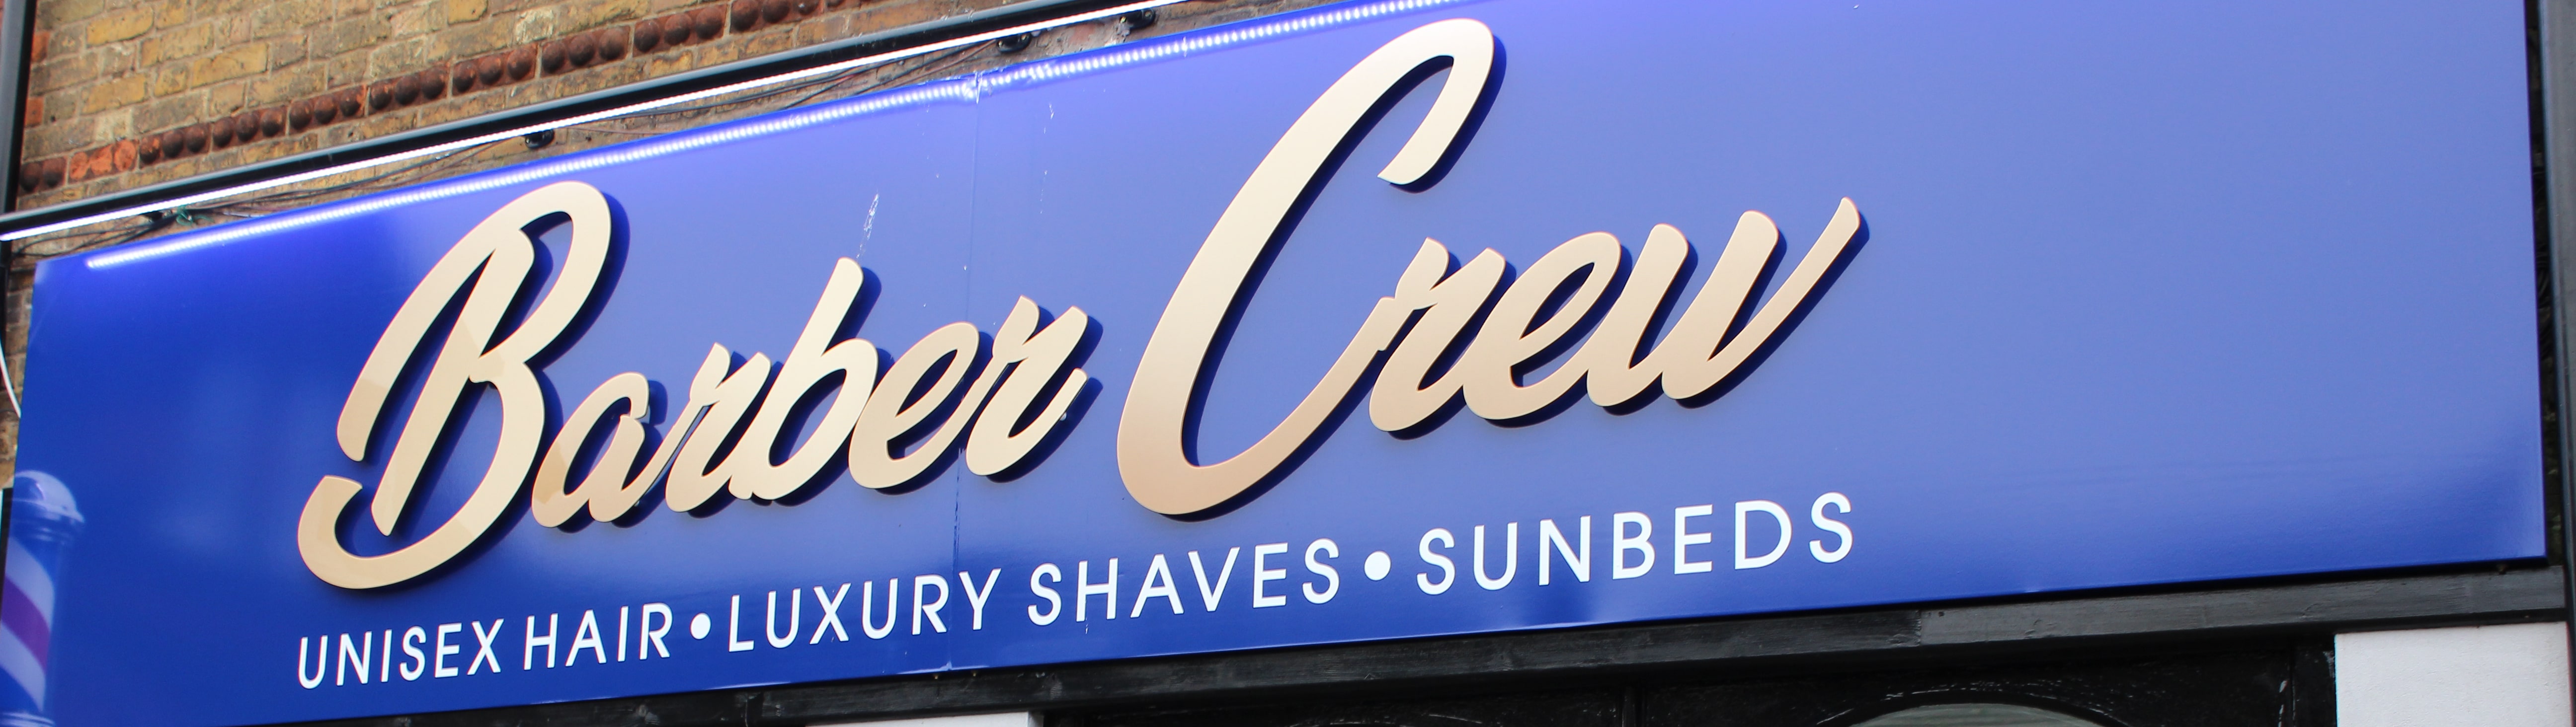 Barber Crew Shop Banner